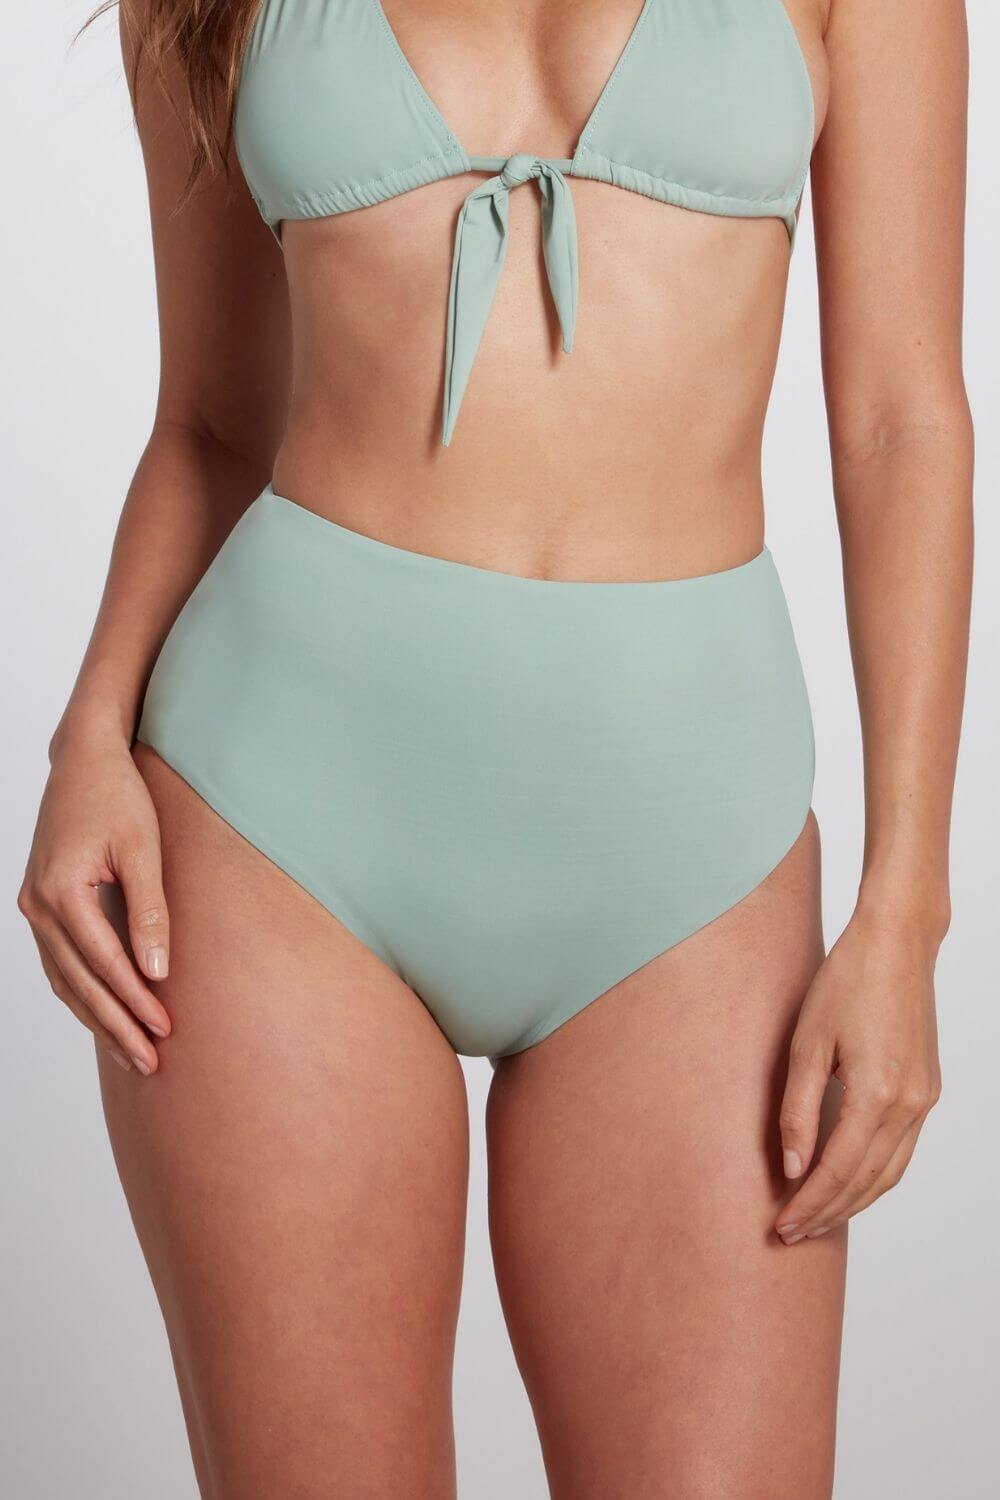 green swimsuit bottoms for women